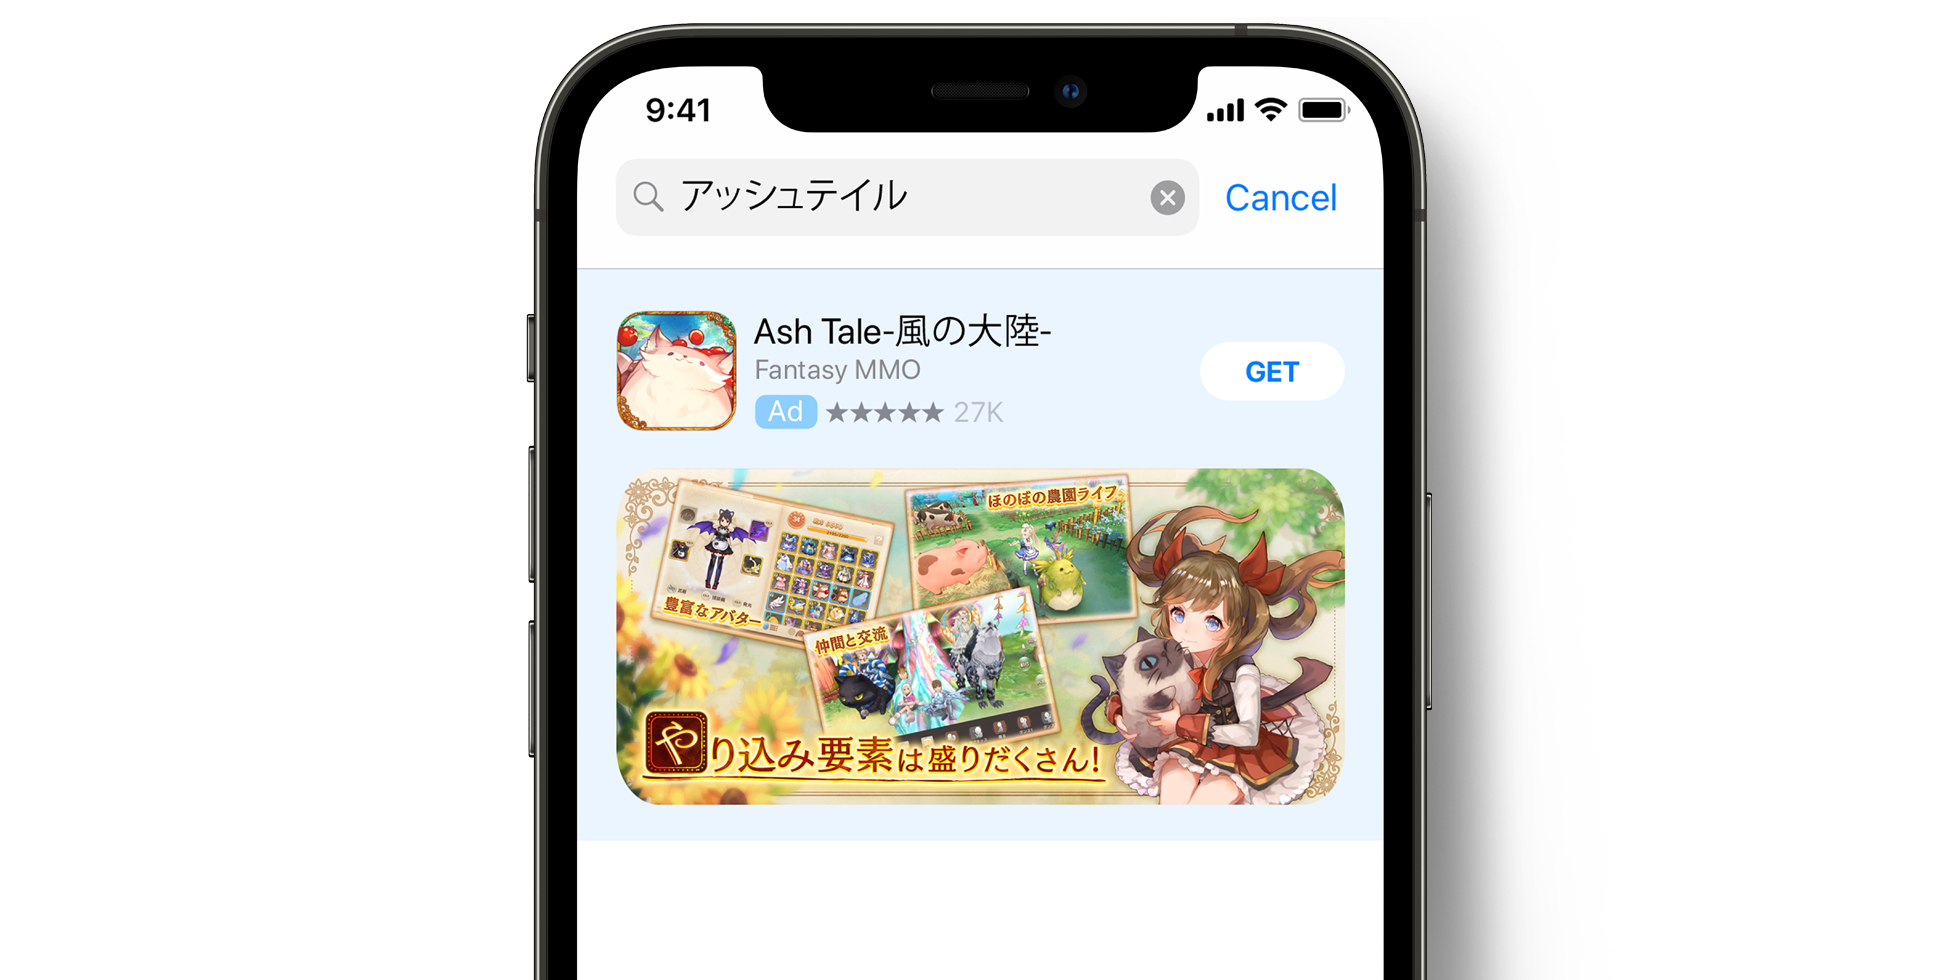 Реклама Ash Tale в App Store